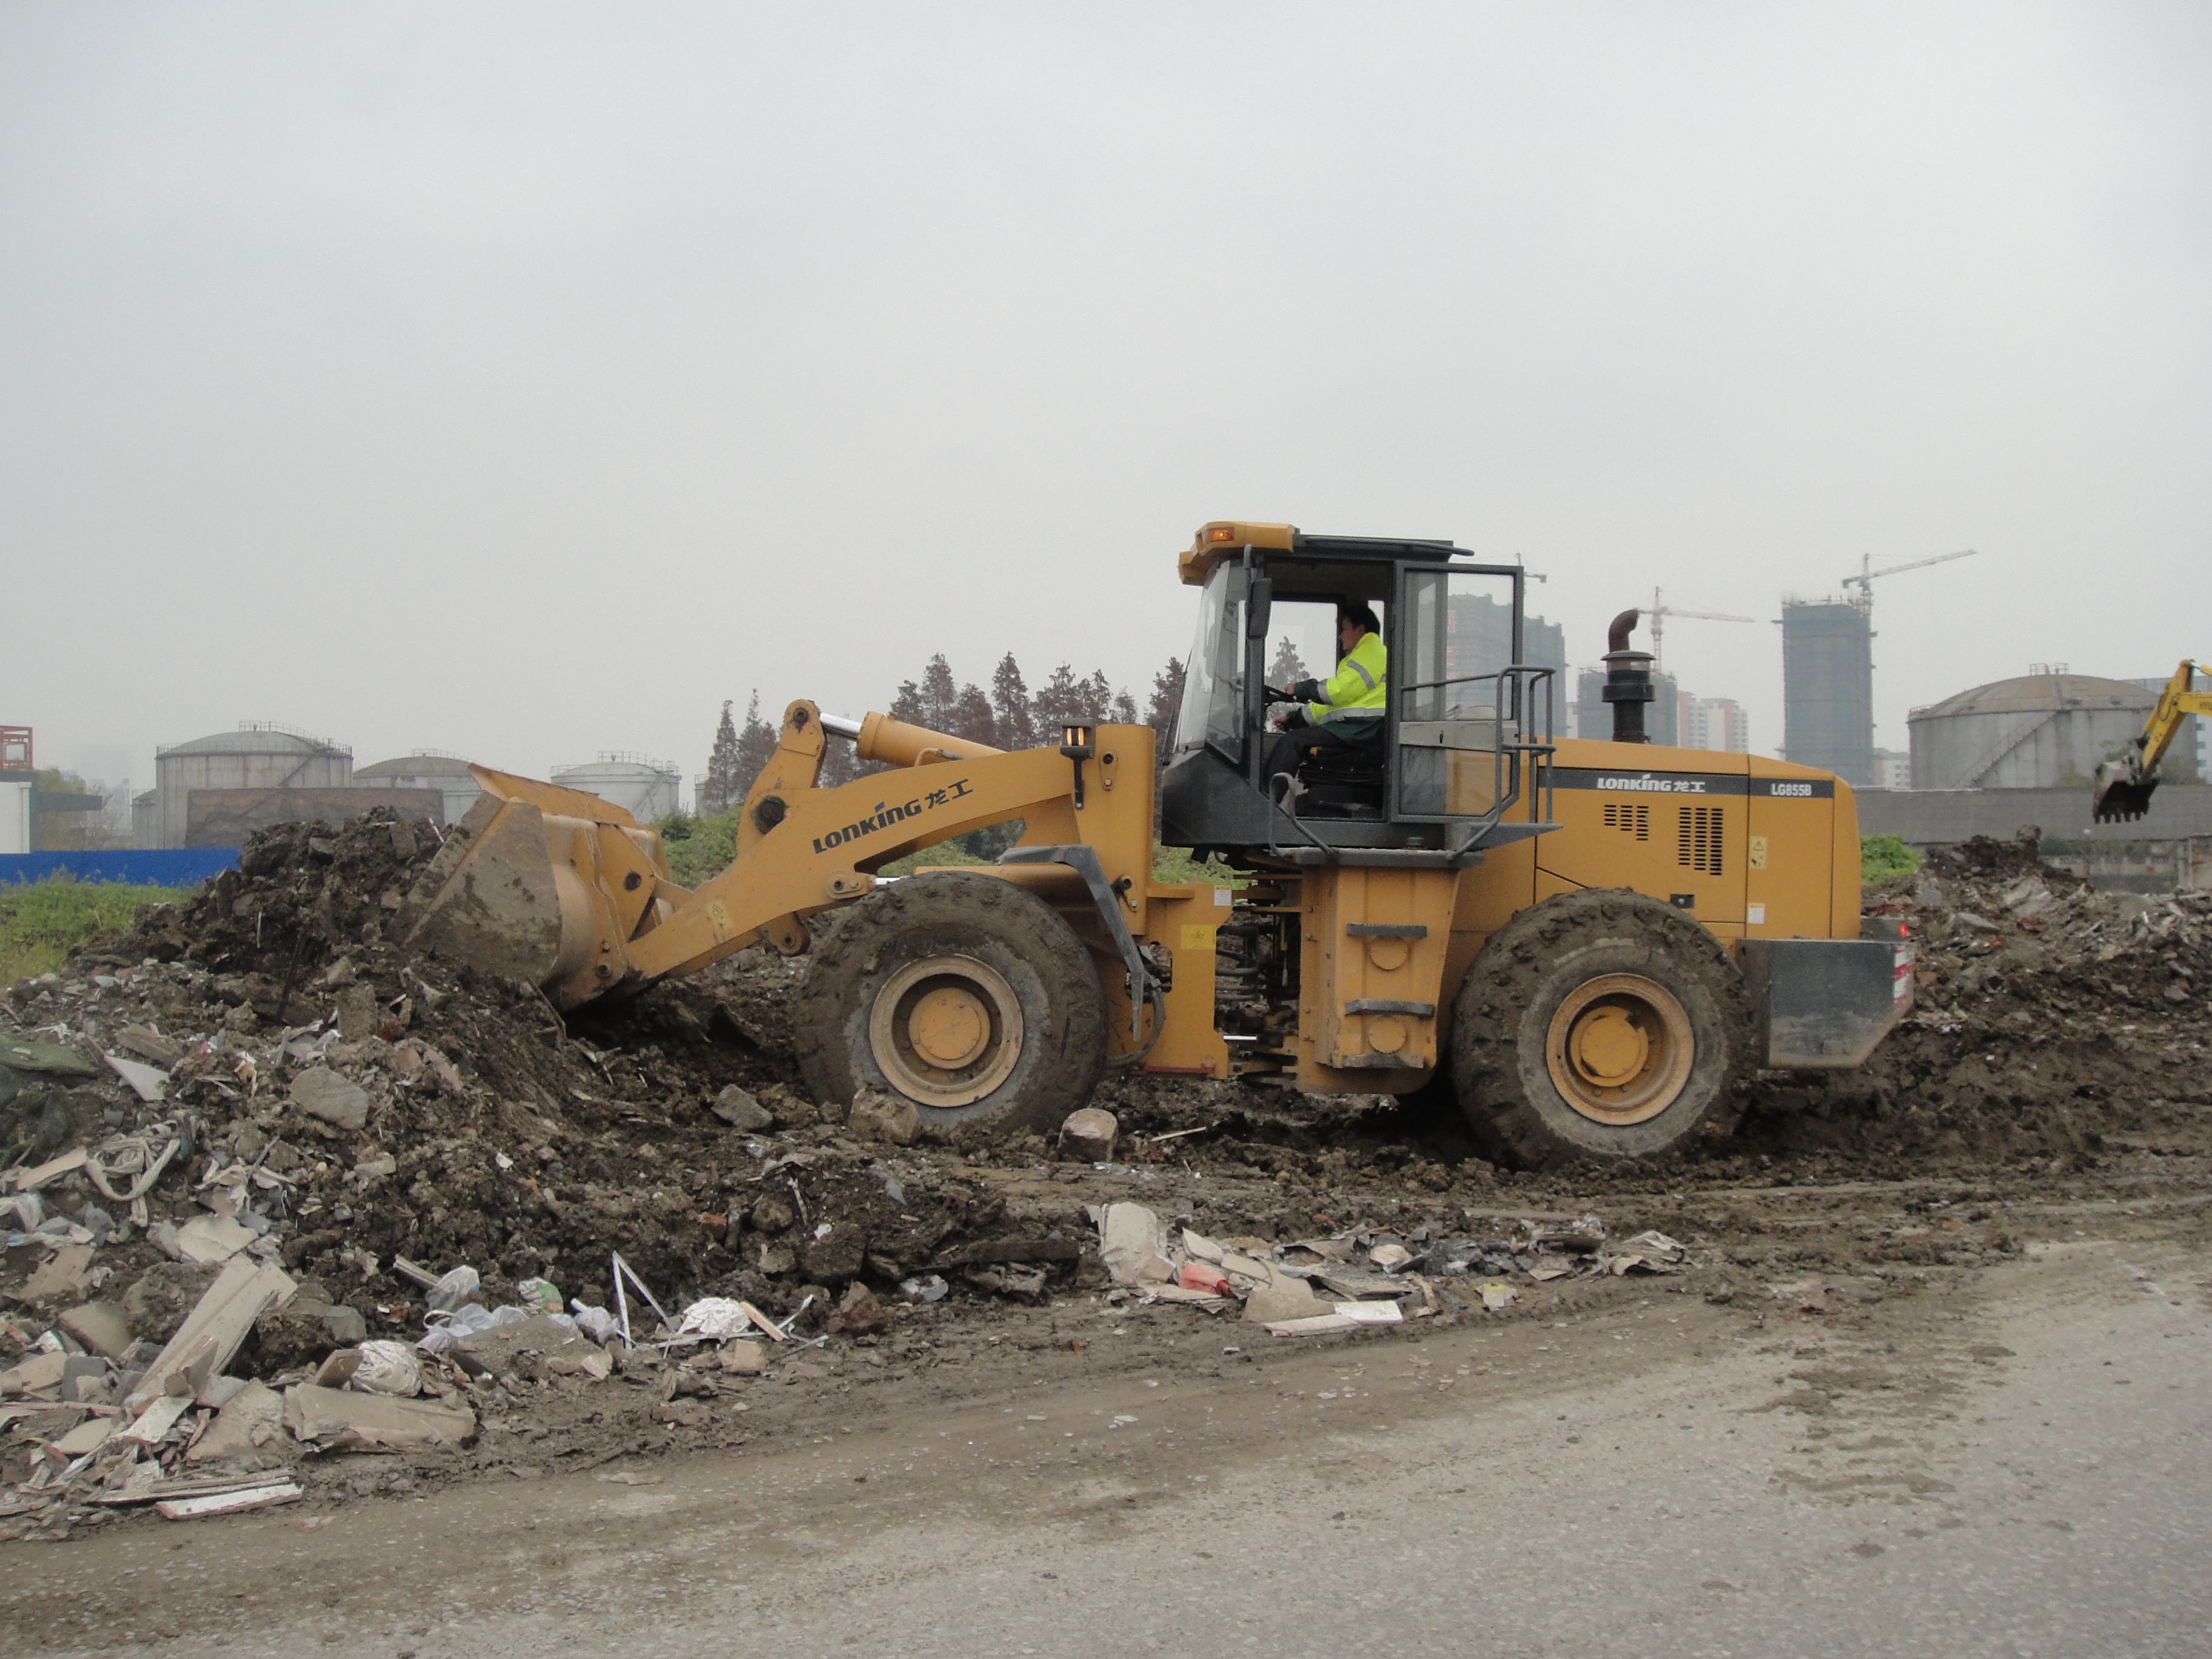 渣土规范处置,定点排放,装修垃圾规范堆放,及时清运,建筑垃圾和散装